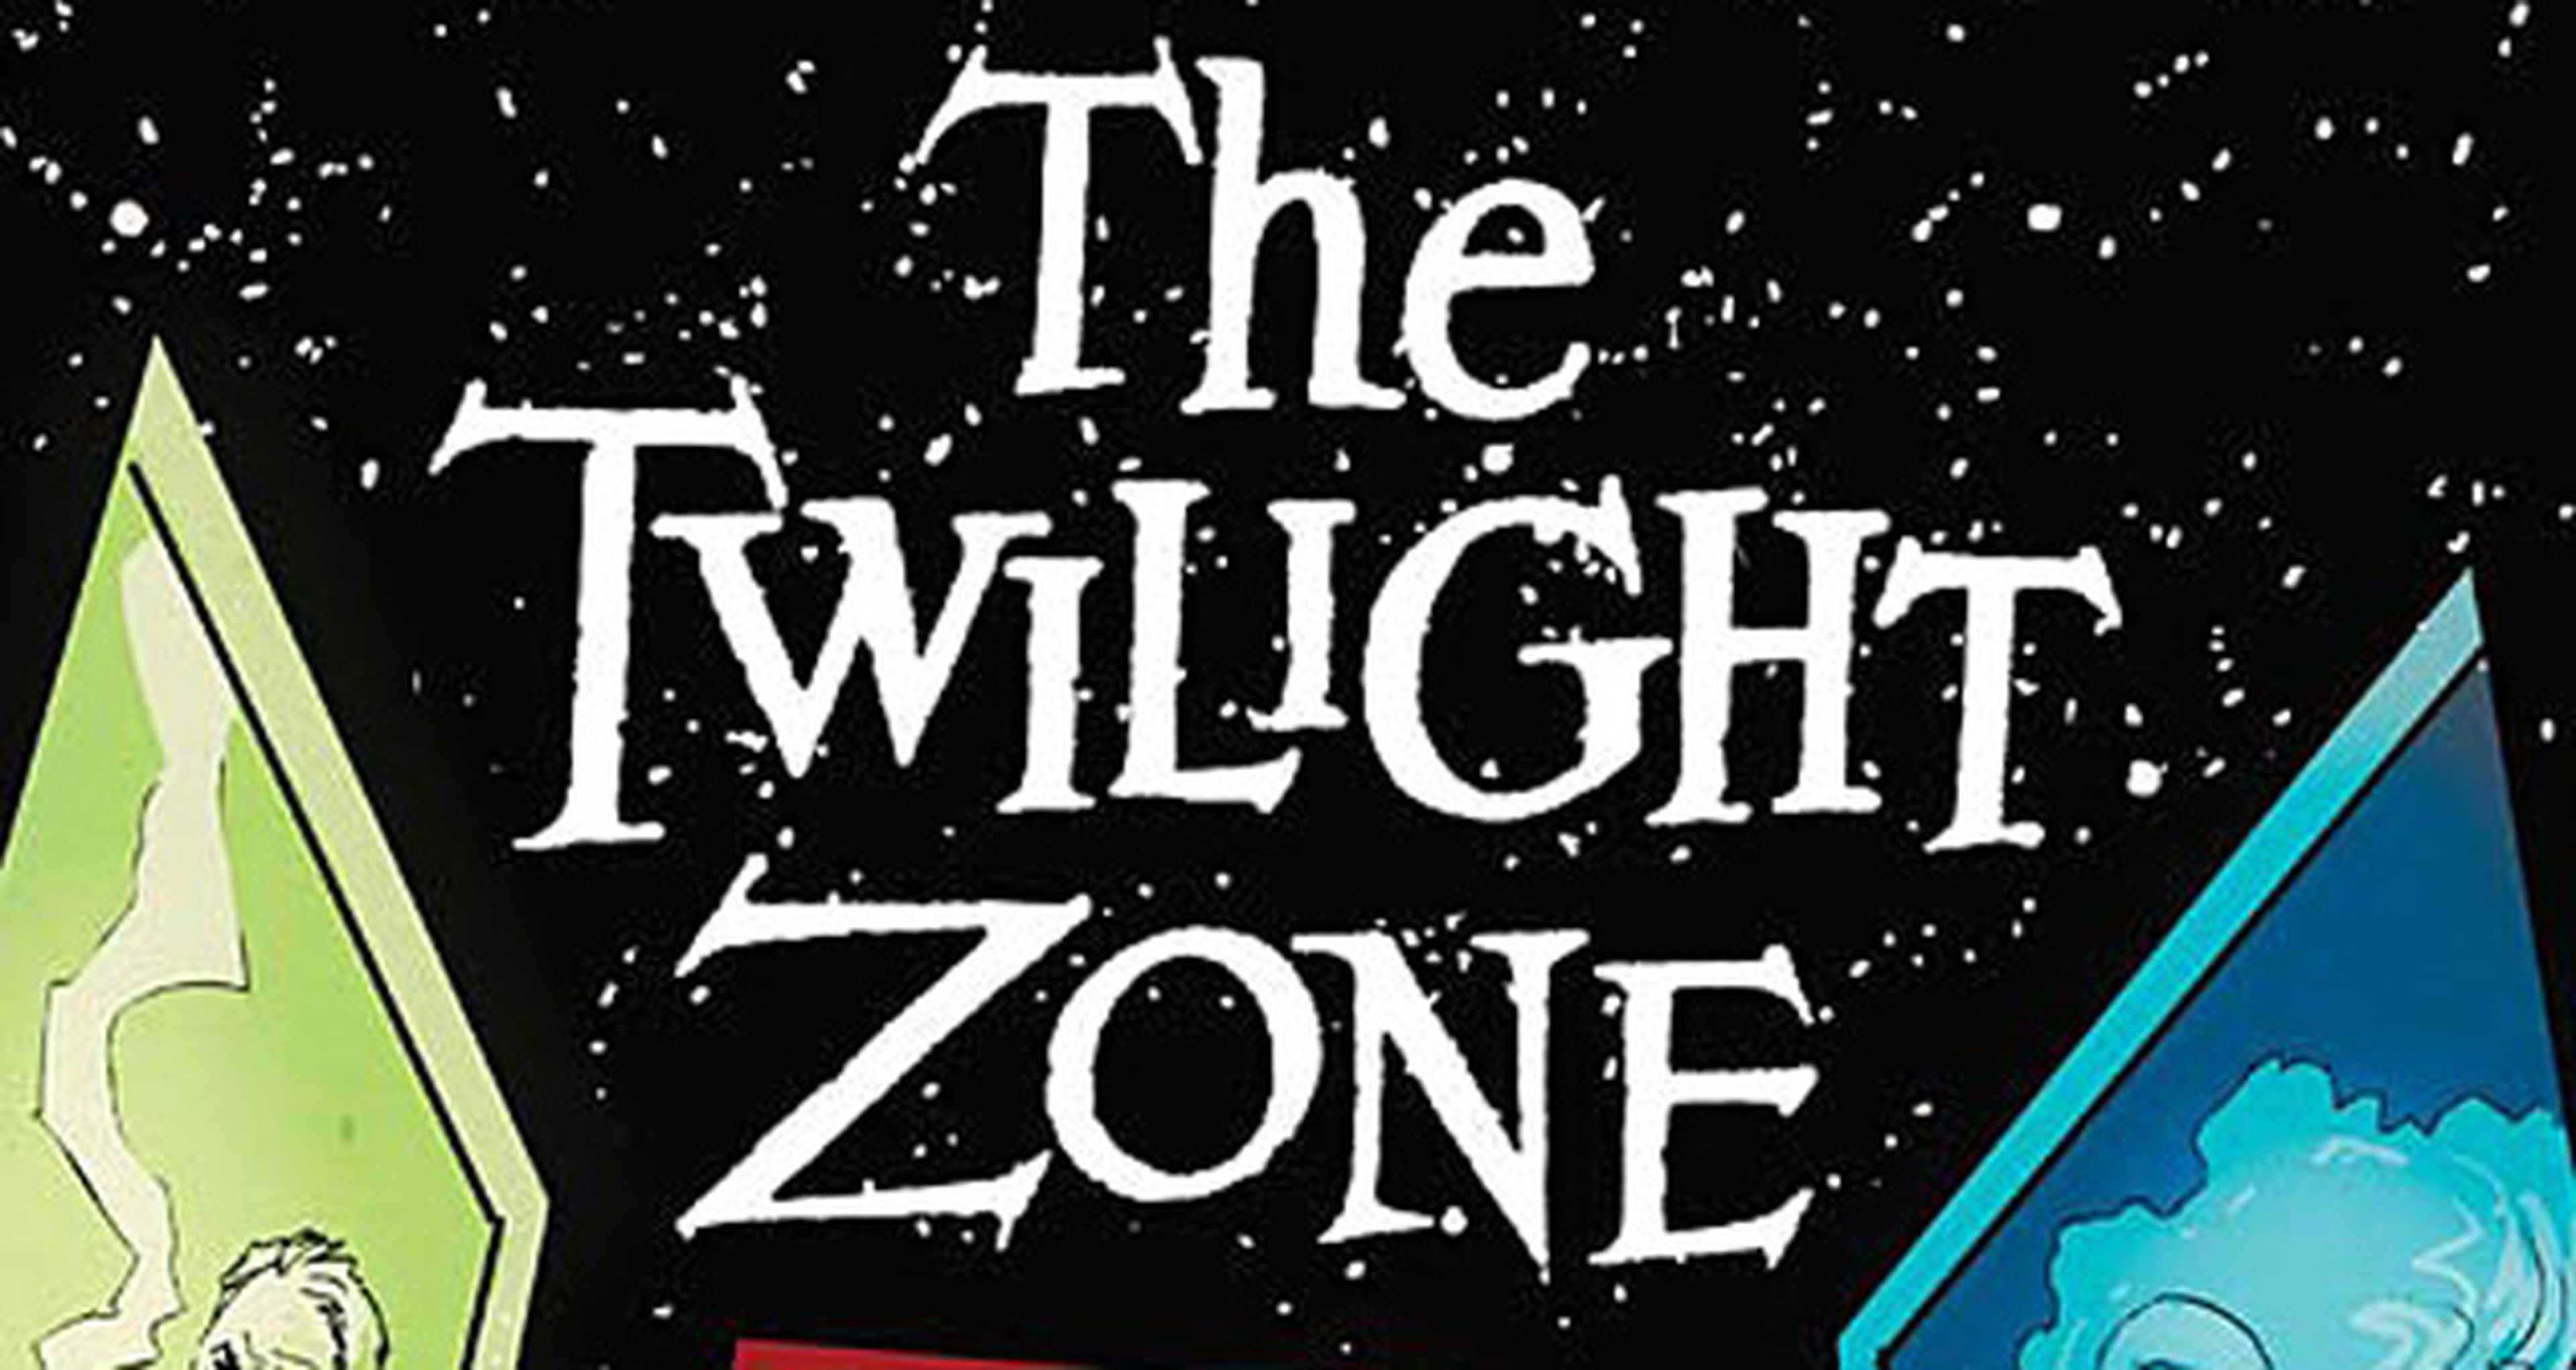 Avance EEUU: The Twilight Zone de J. Michael Straczynski